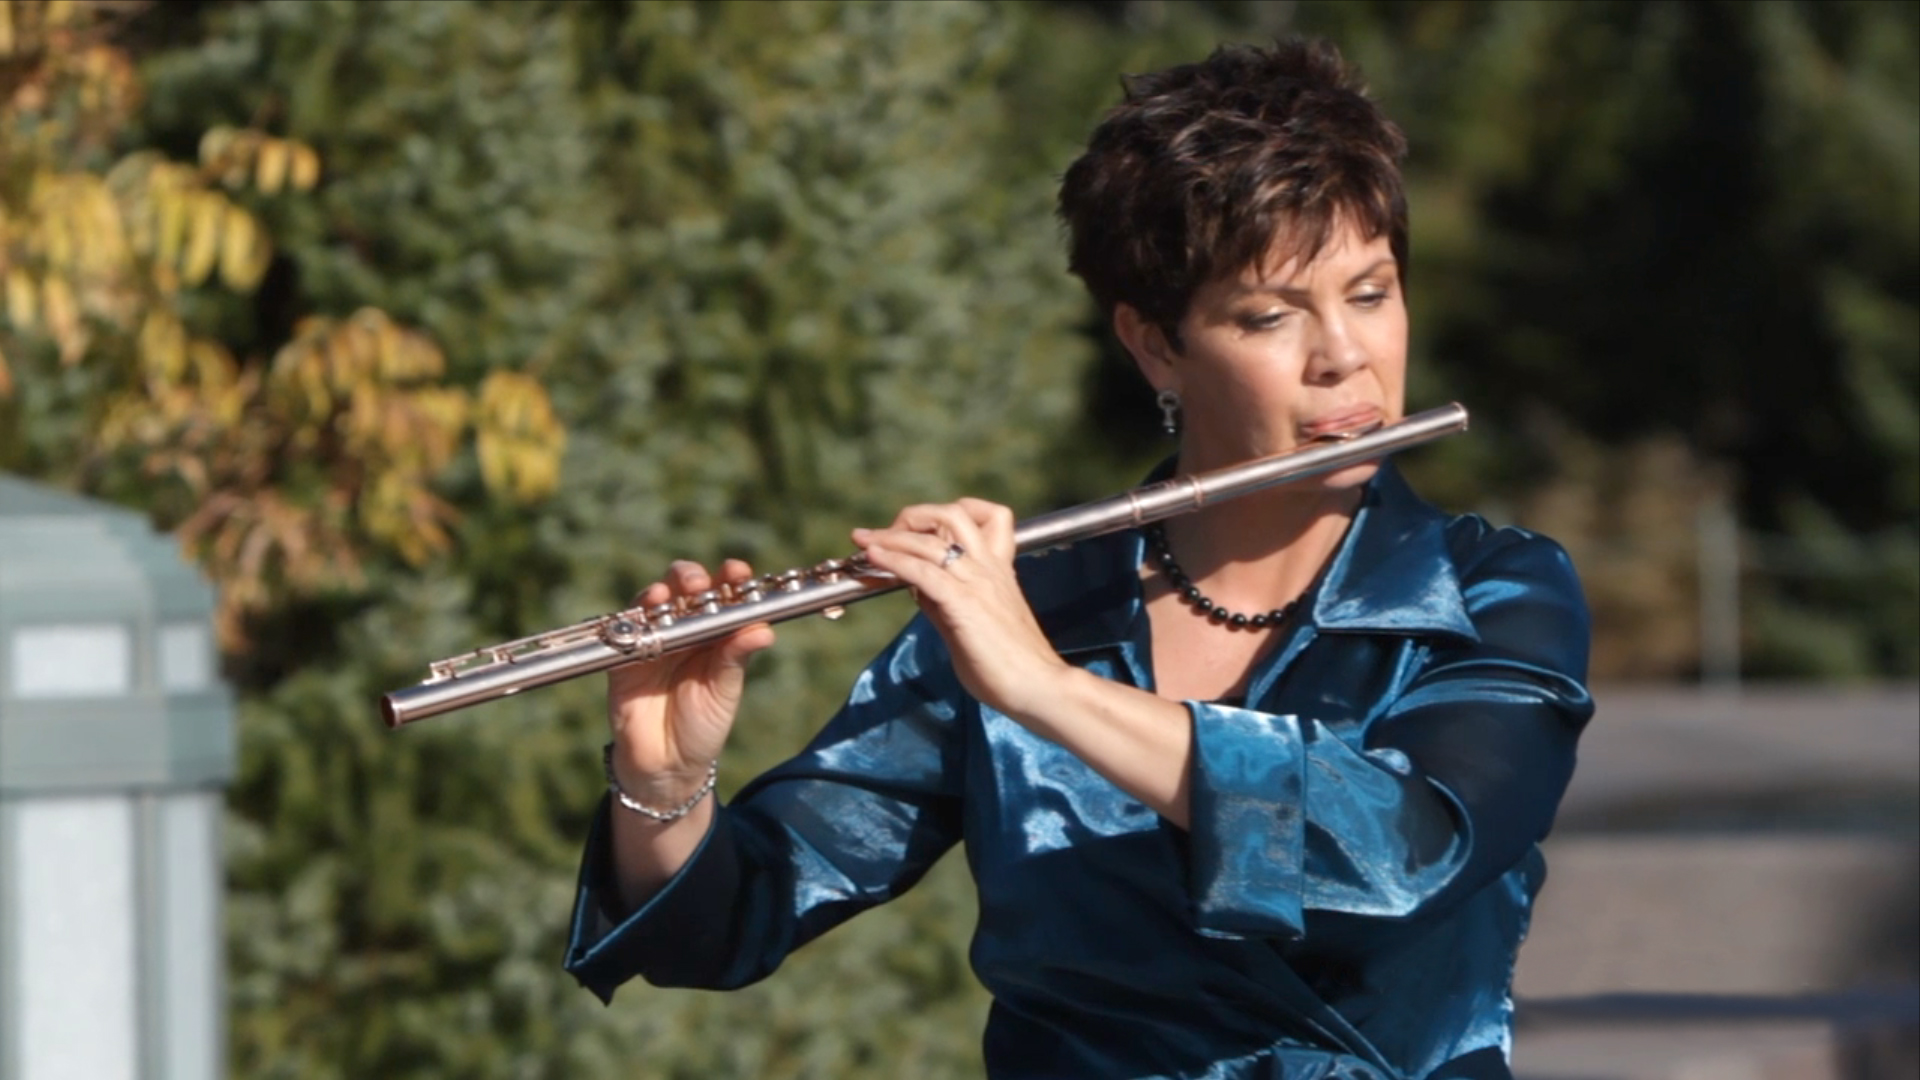 Jeannine Goeckeritz - Flute Out Door Performance.jpg